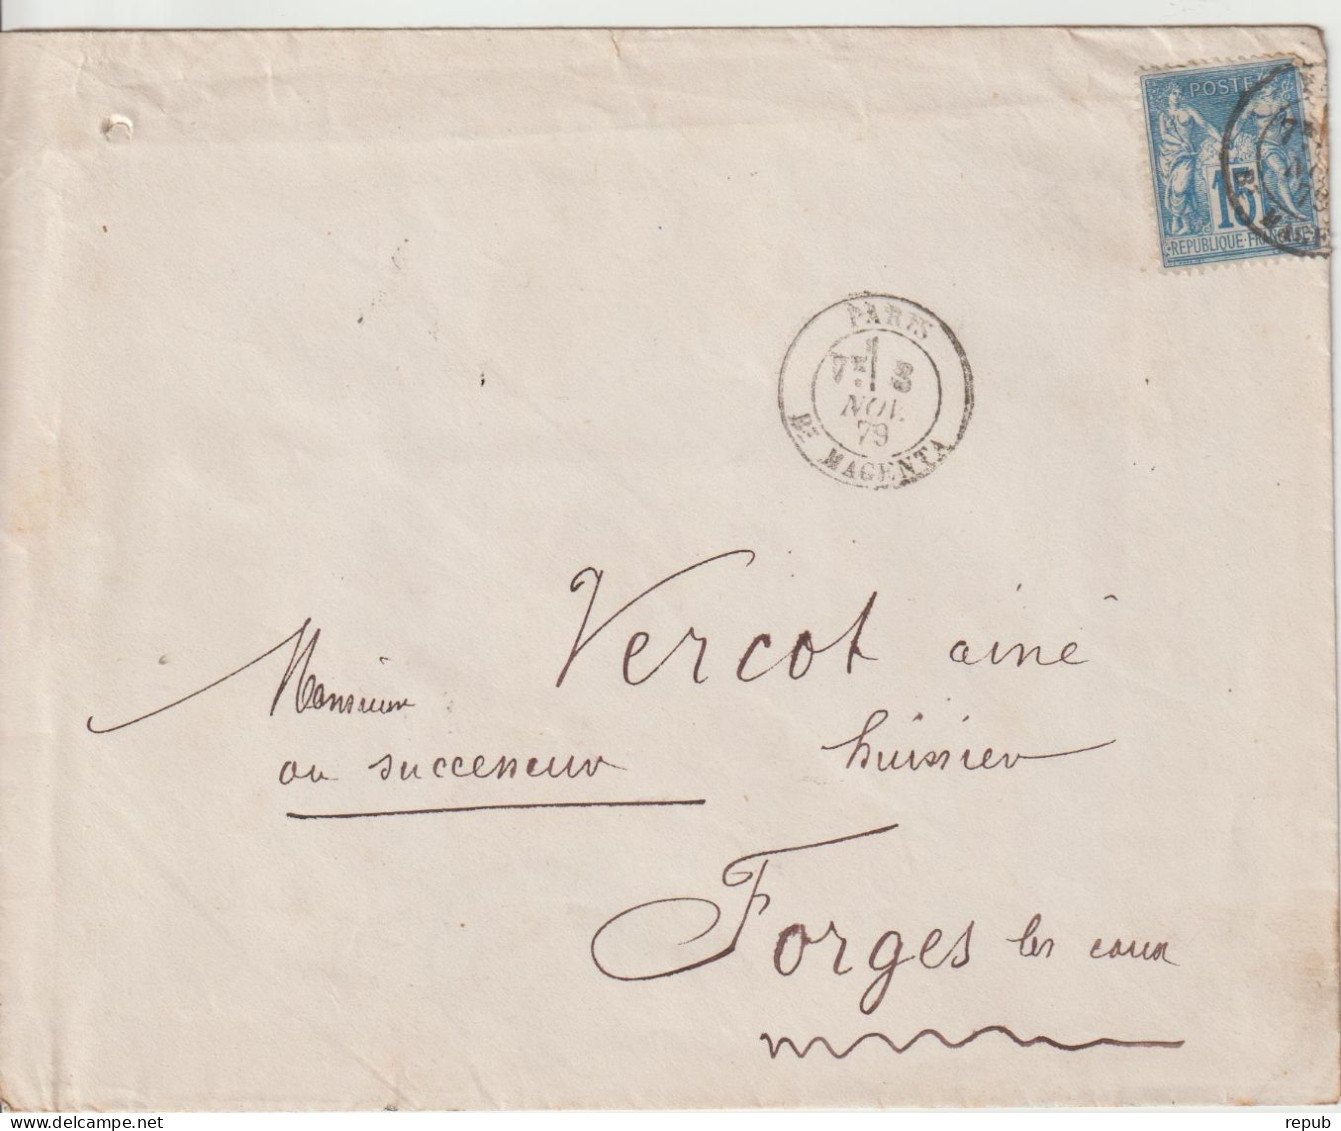 France Lettre 1879 De Paris Bd Magenta Pour Forges (76) - 1877-1920: Semi-Moderne